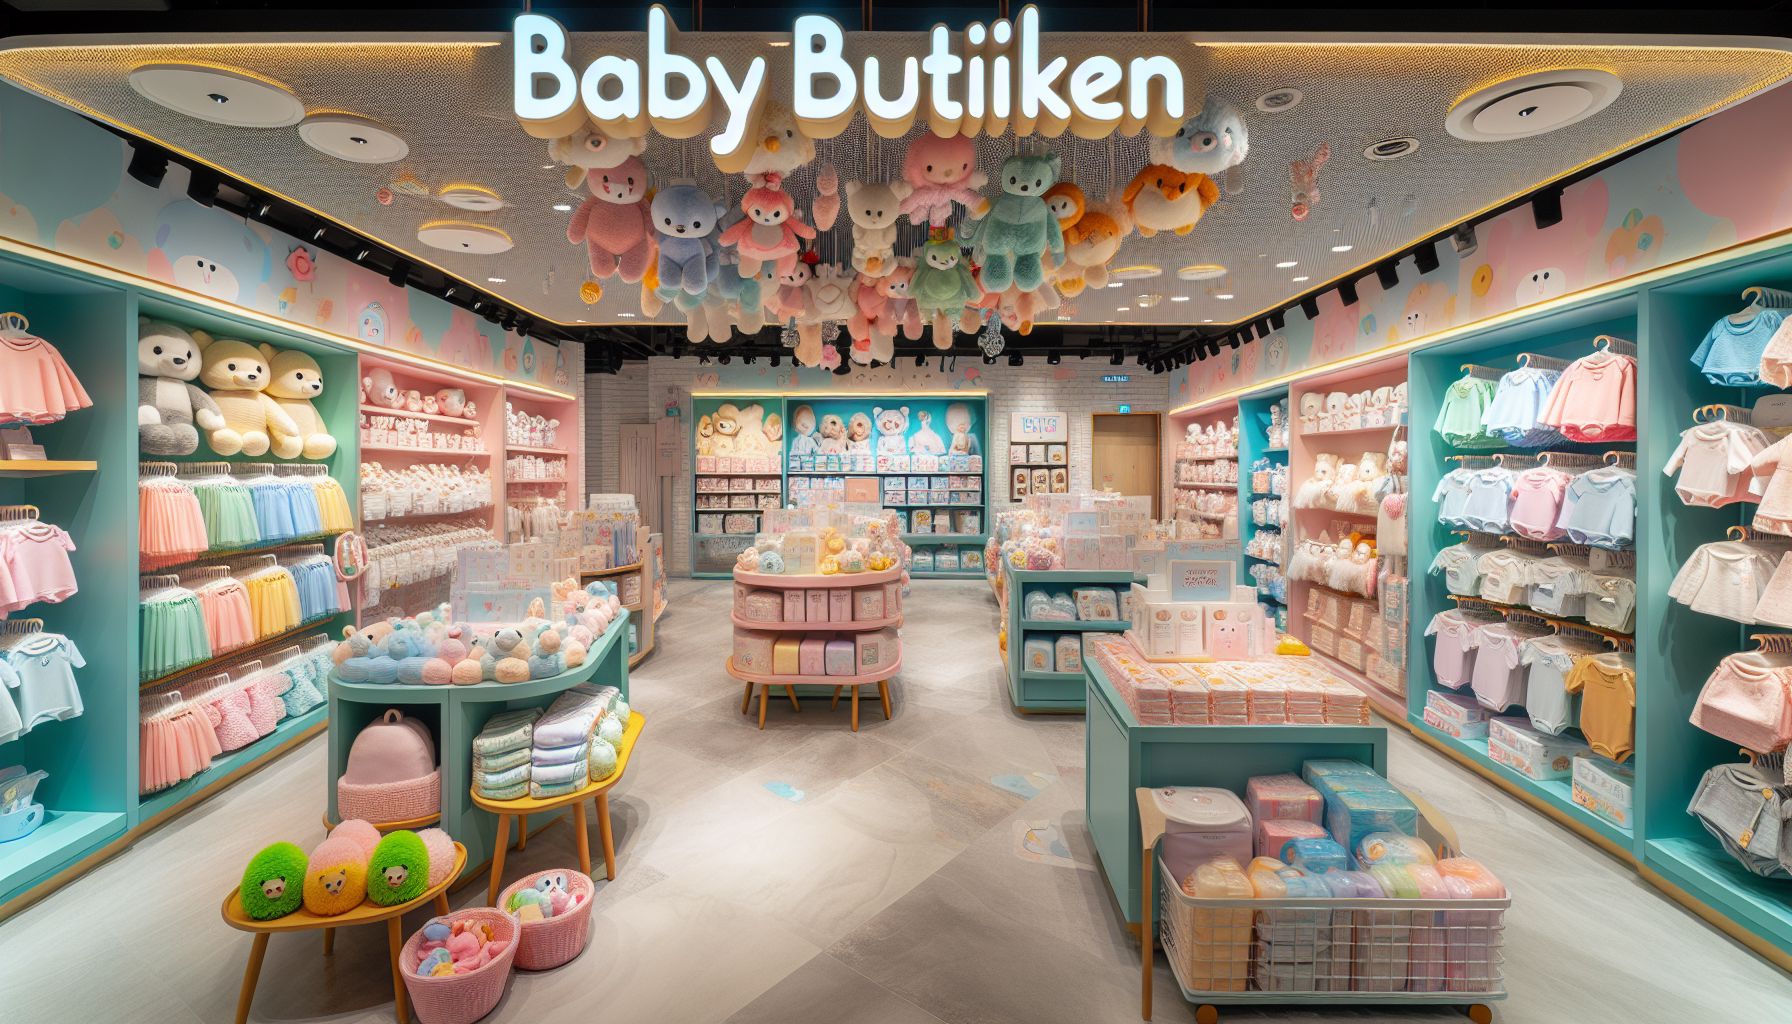 Baby Butiken – Den Perfekta Platsen för Babyleksaker, Babykläder och mer!